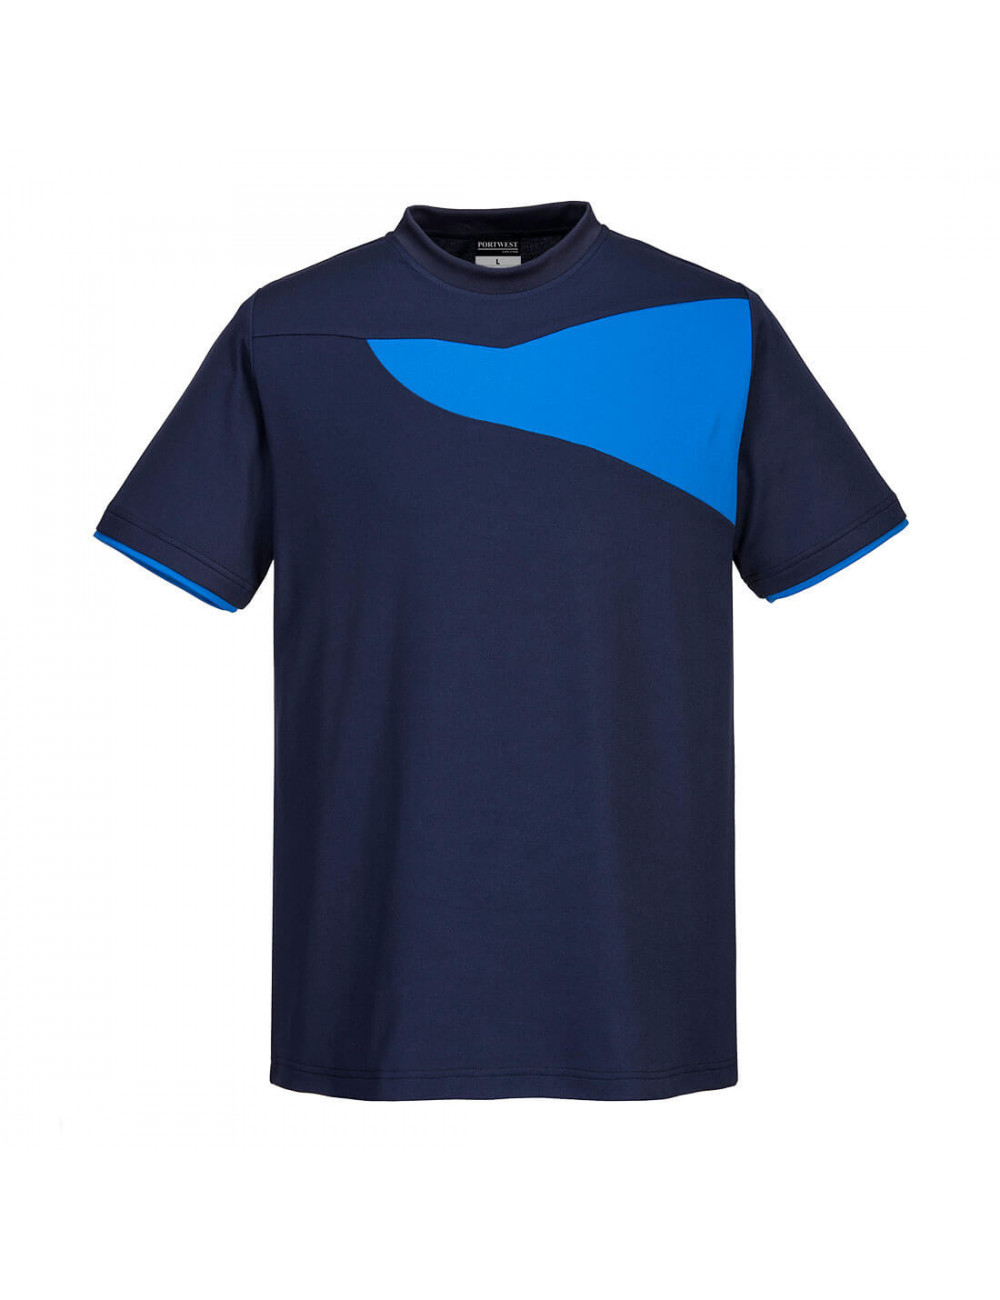 PW2 T-Shirt Marineblau/Königsblau Portwest